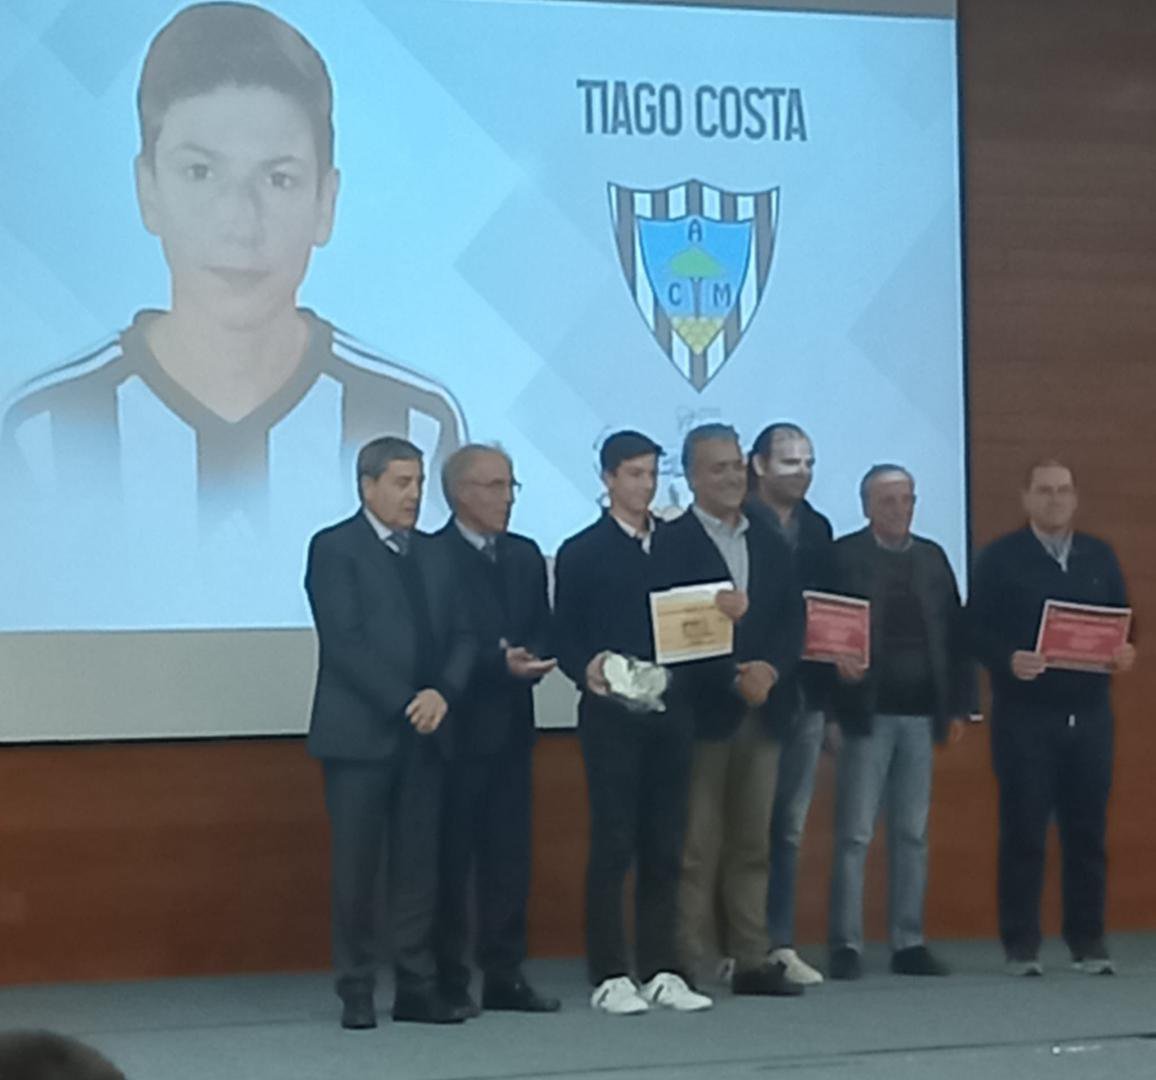 Tiago Costa recebe Menção Honrosa!